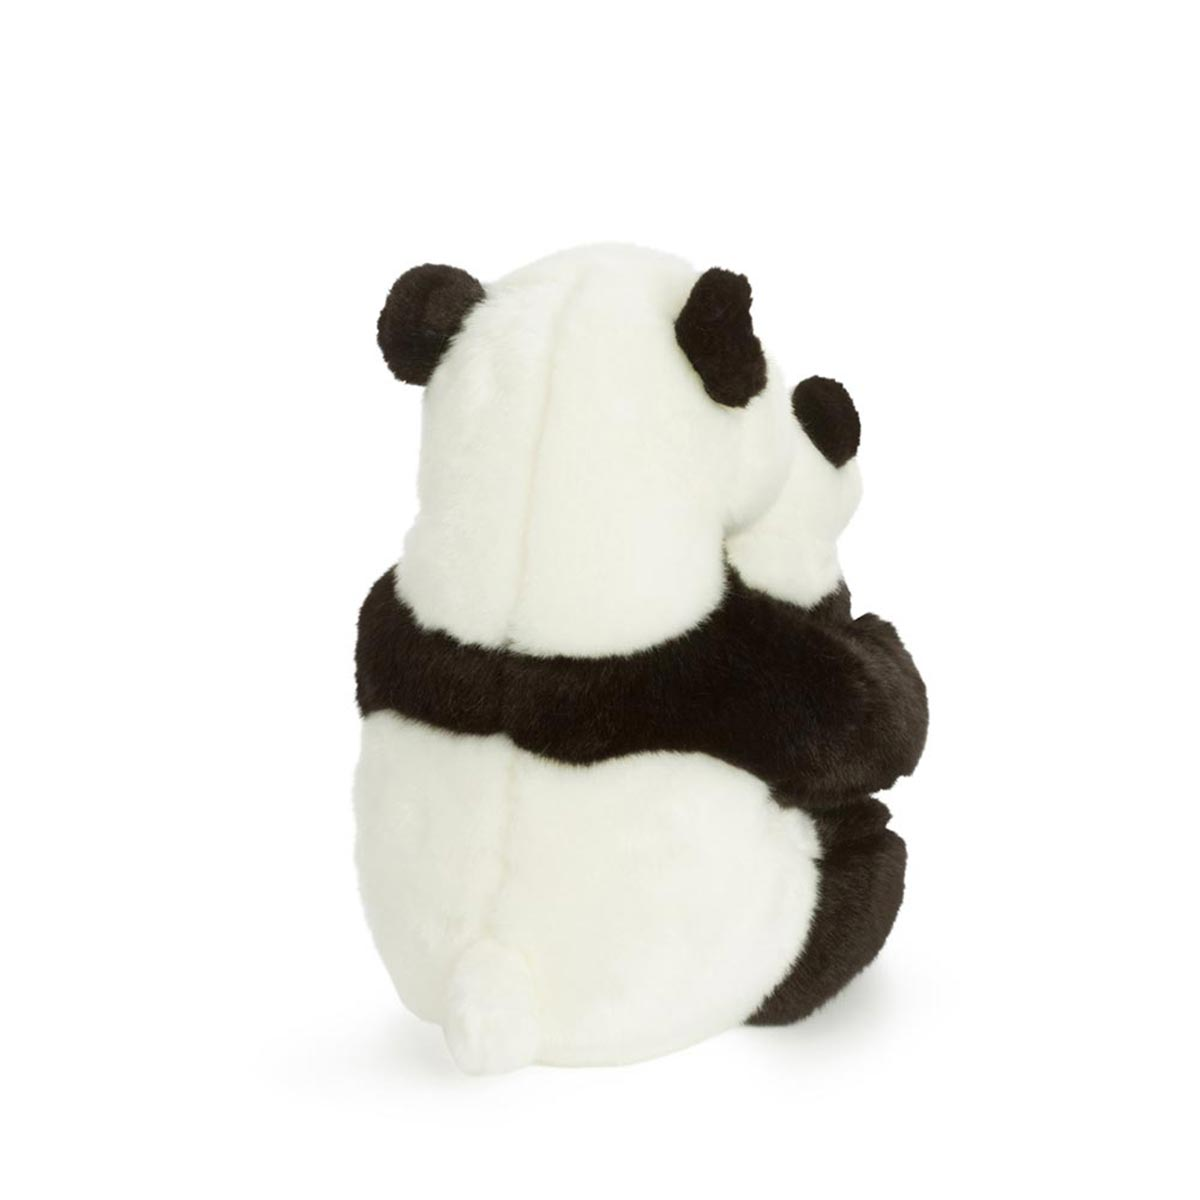 mit Plüschtier Pandamutter WWF Baby (28cm) MY ANIMAL